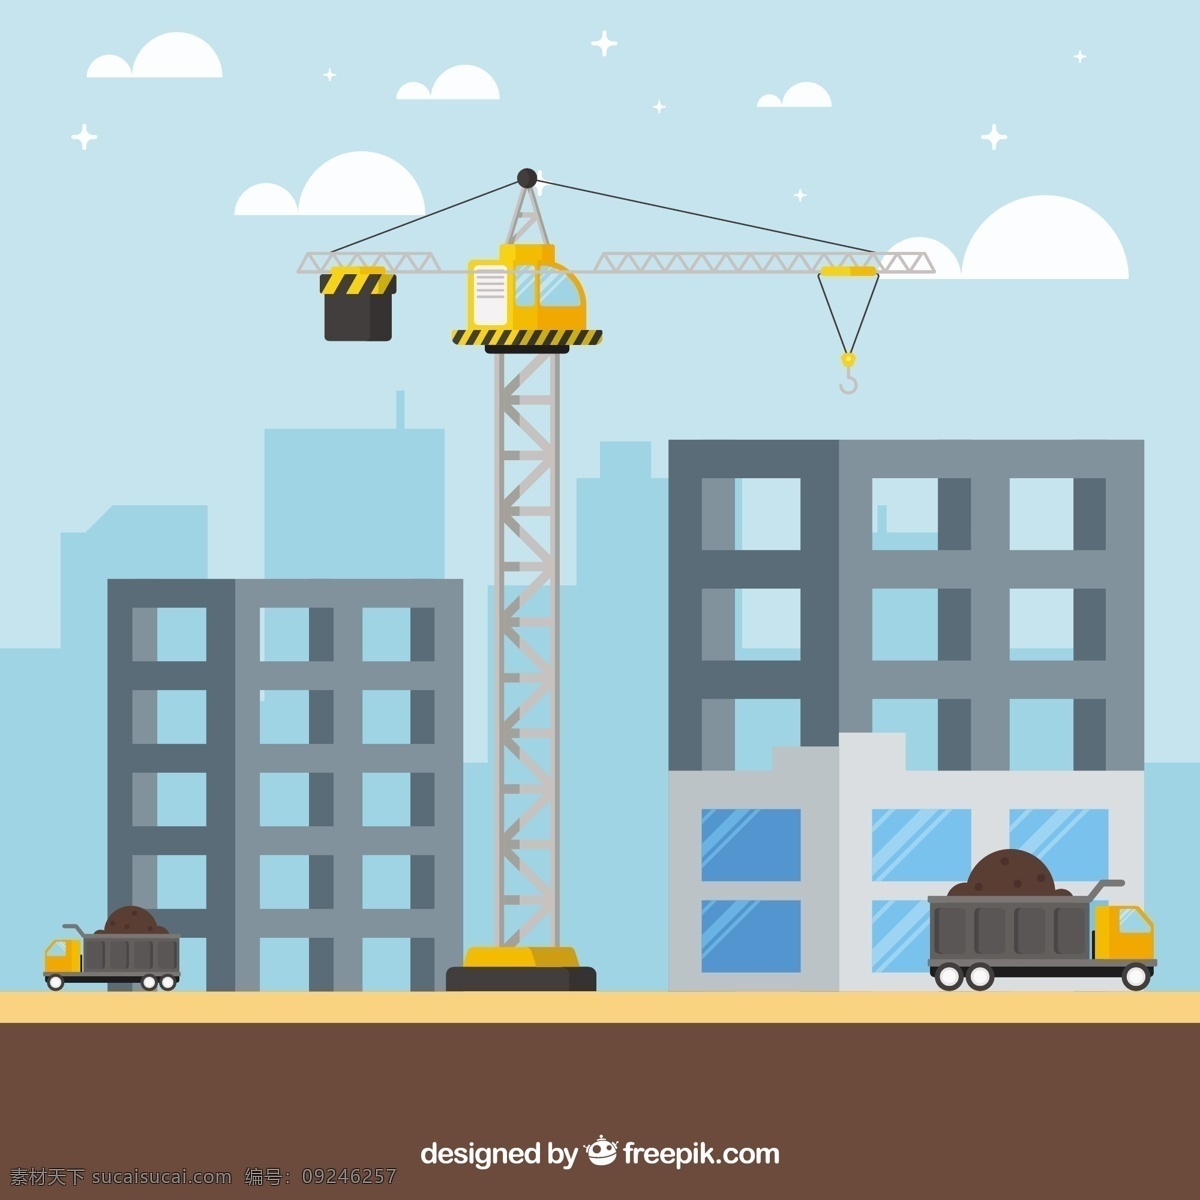 两 栋 建筑 起重机 的背景下 城市 平面 建筑工人 镇 背景 市容 砖 工人 建设者 城市建筑 挖掘机